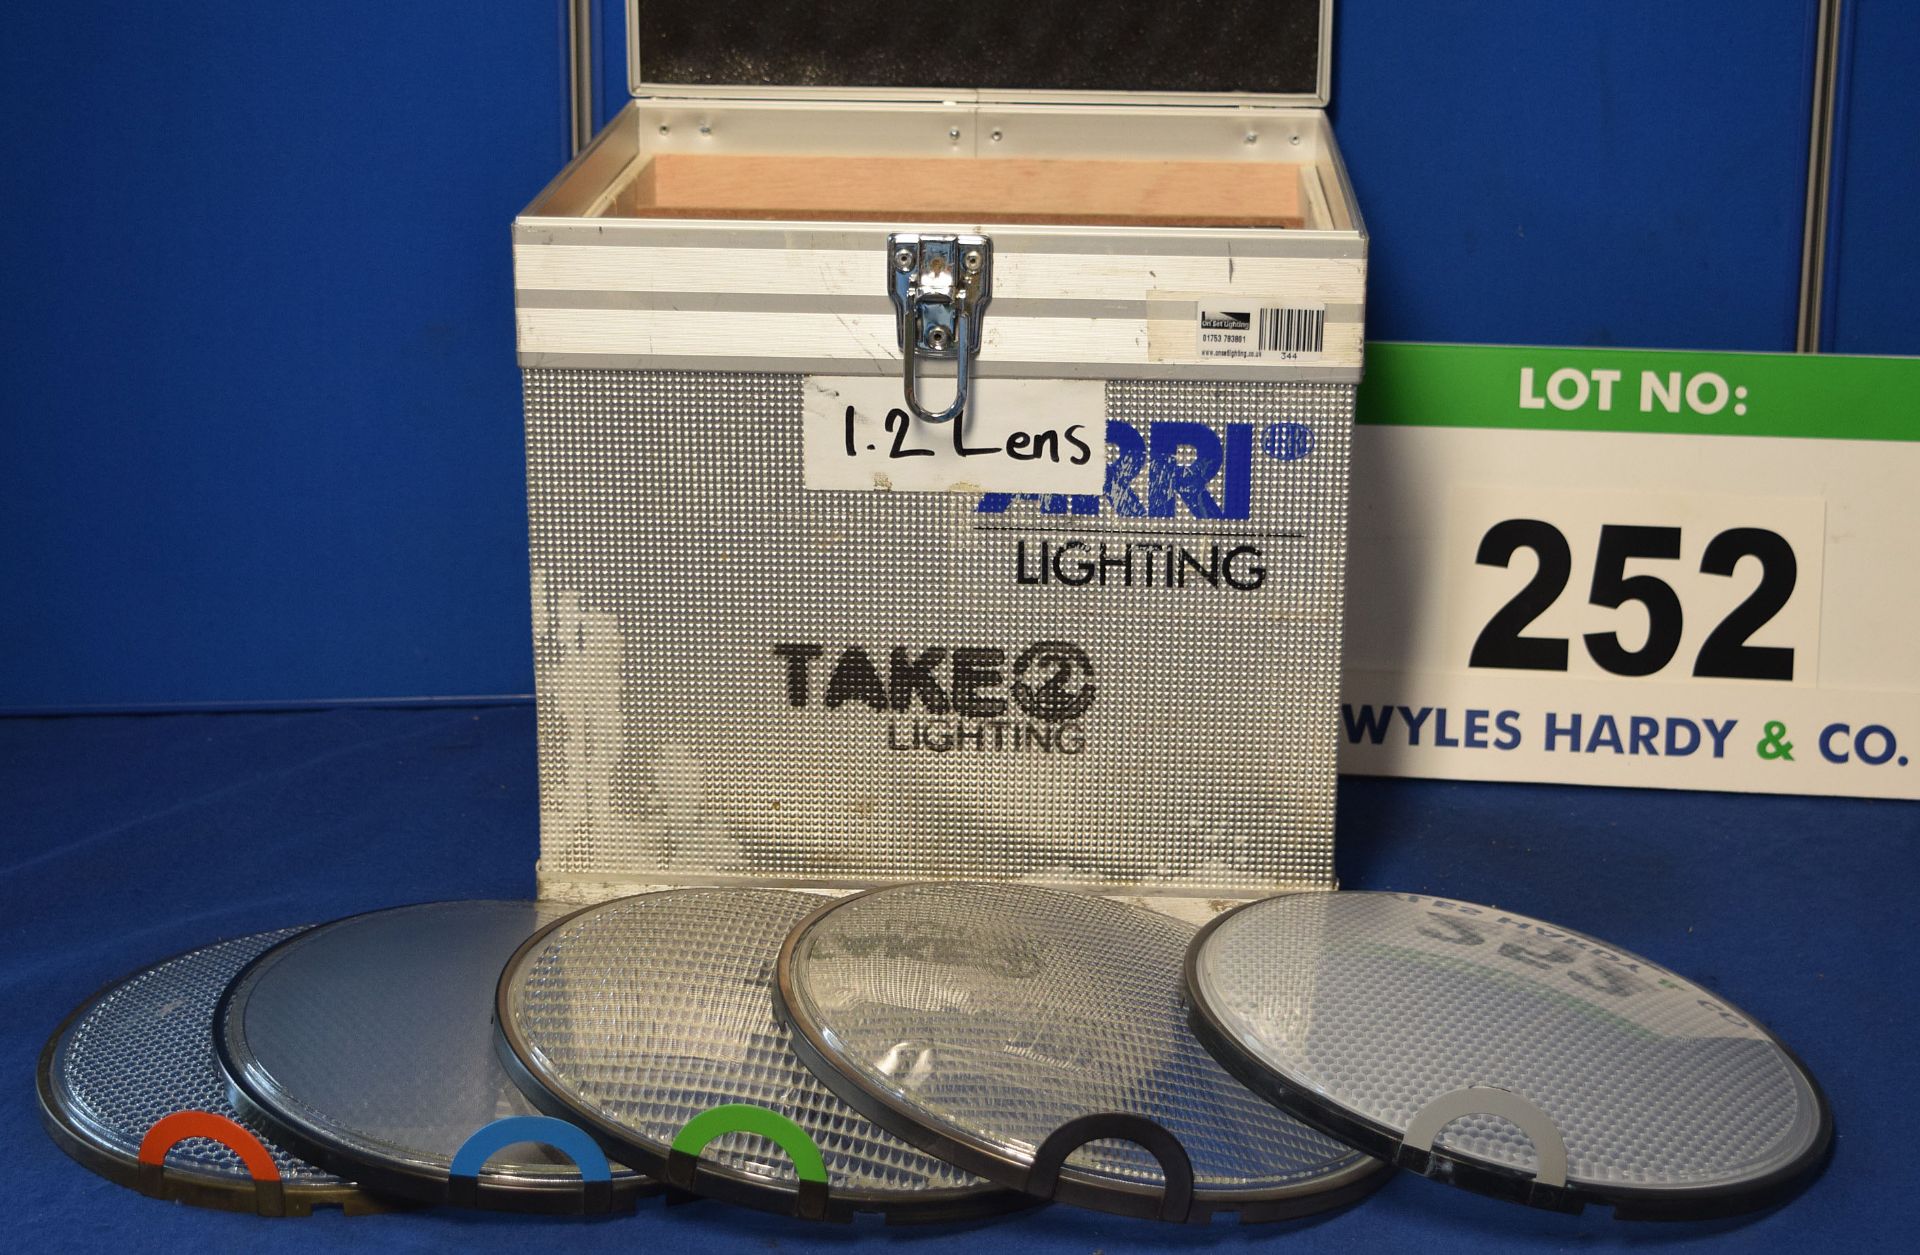 An ARRI 1.2K 5-Piece Lens Kit in A Dedicated Flight Case